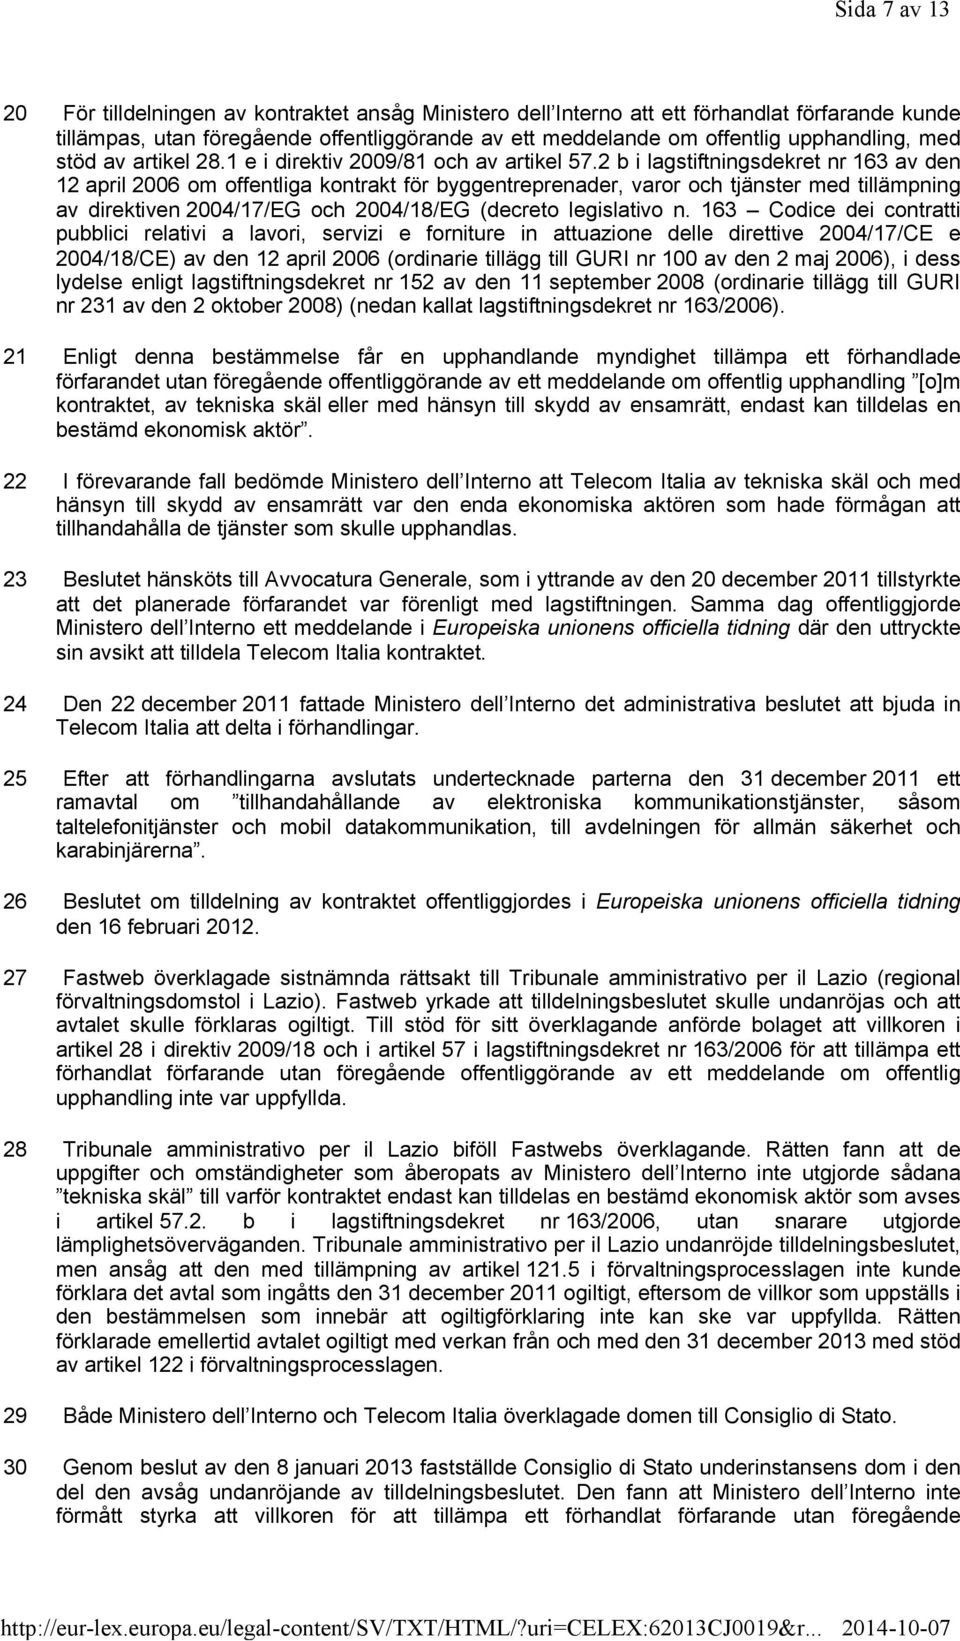 2 b i lagstiftningsdekret nr 163 av den 12 april 2006 om offentliga kontrakt för byggentreprenader, varor och tjänster med tillämpning av direktiven 2004/17/EG och 2004/18/EG (decreto legislativo n.